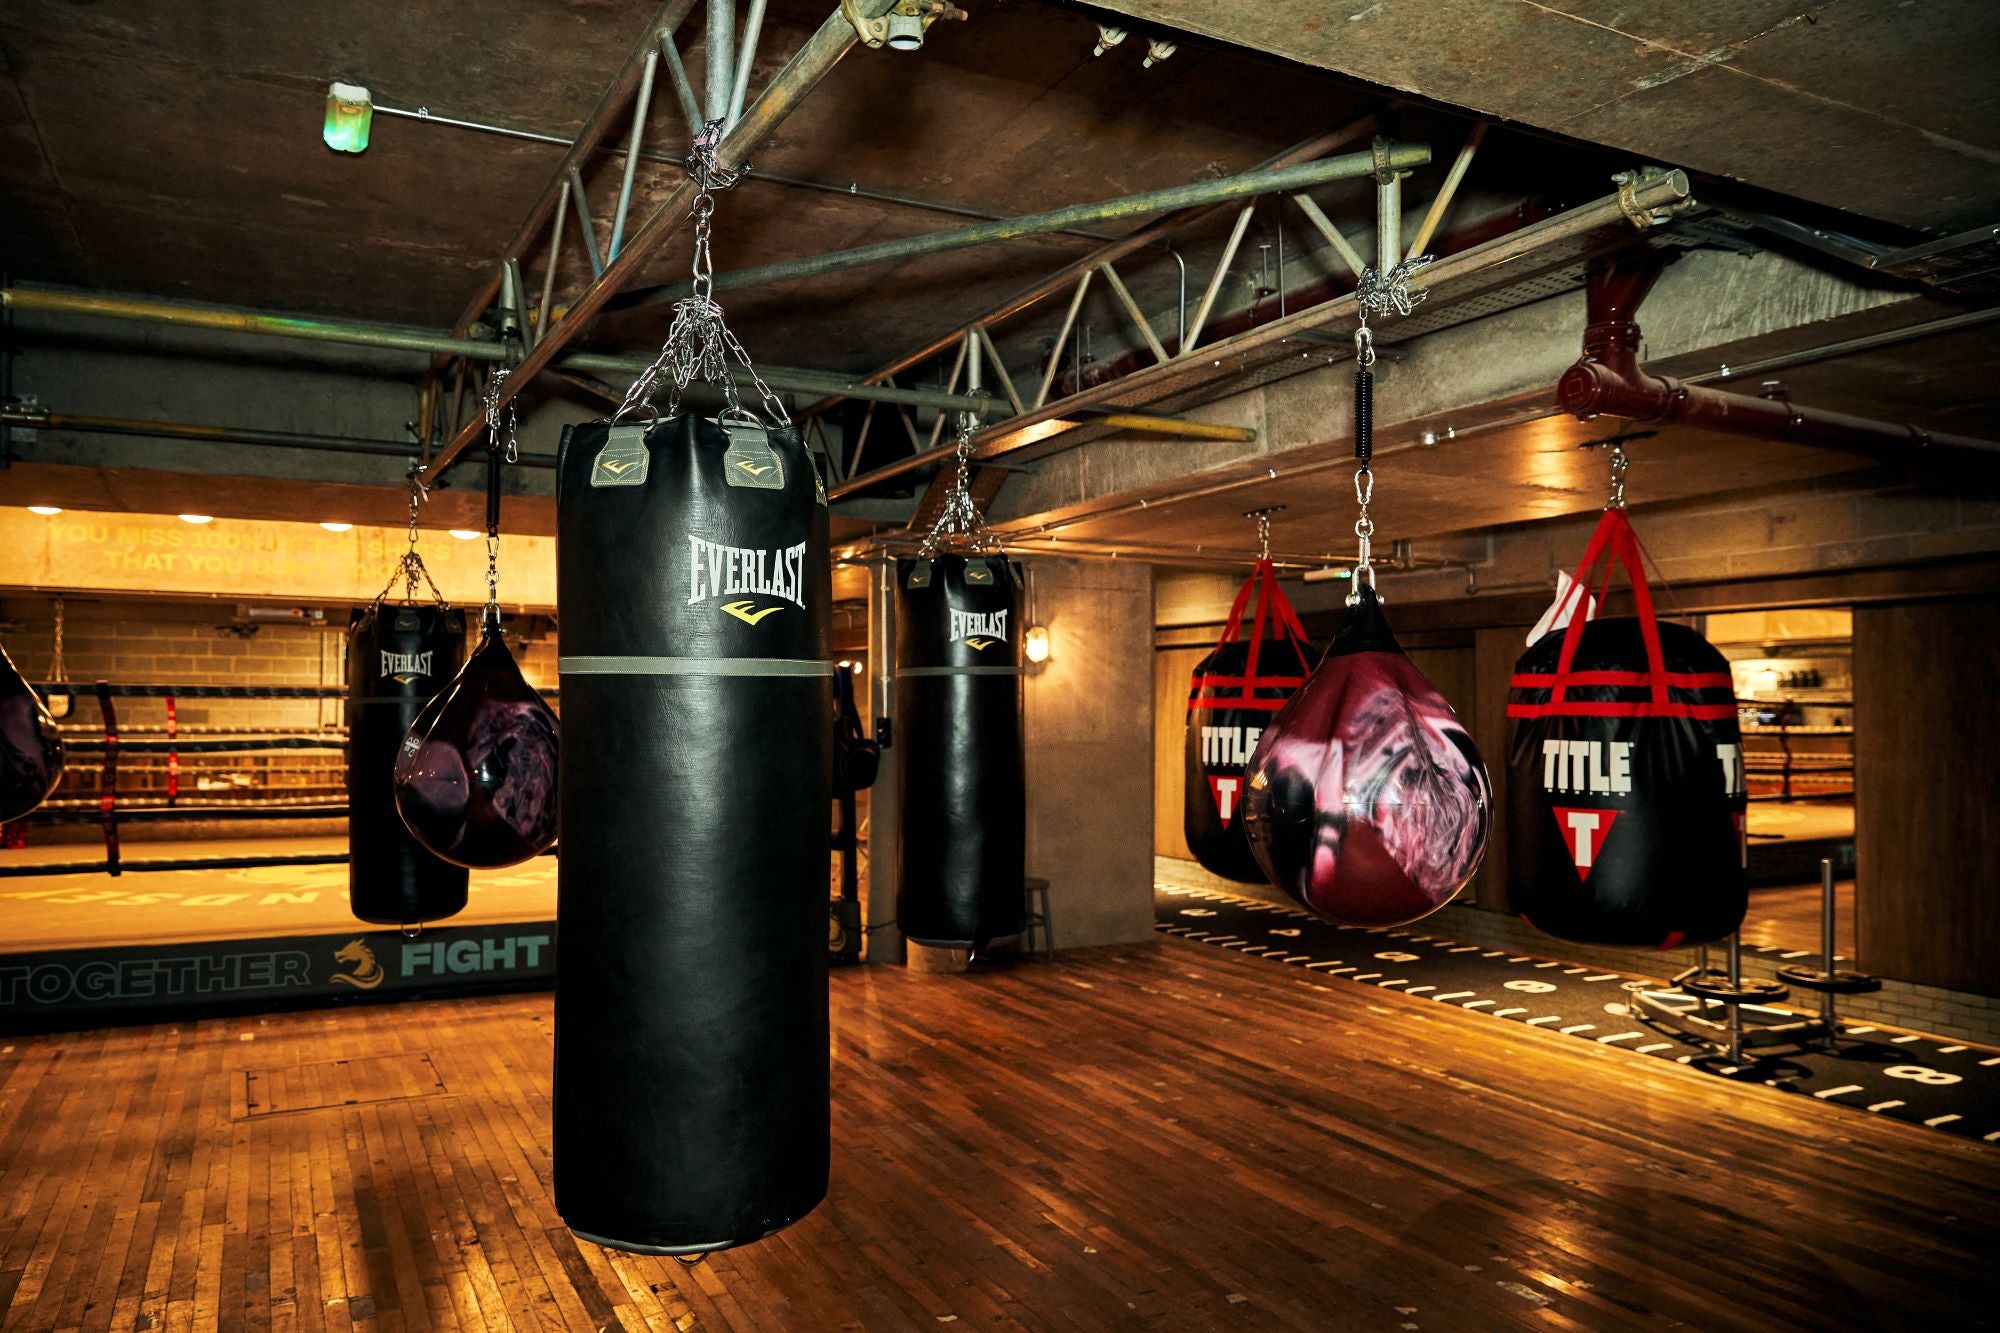 RABC – Rathbone Boxing Club